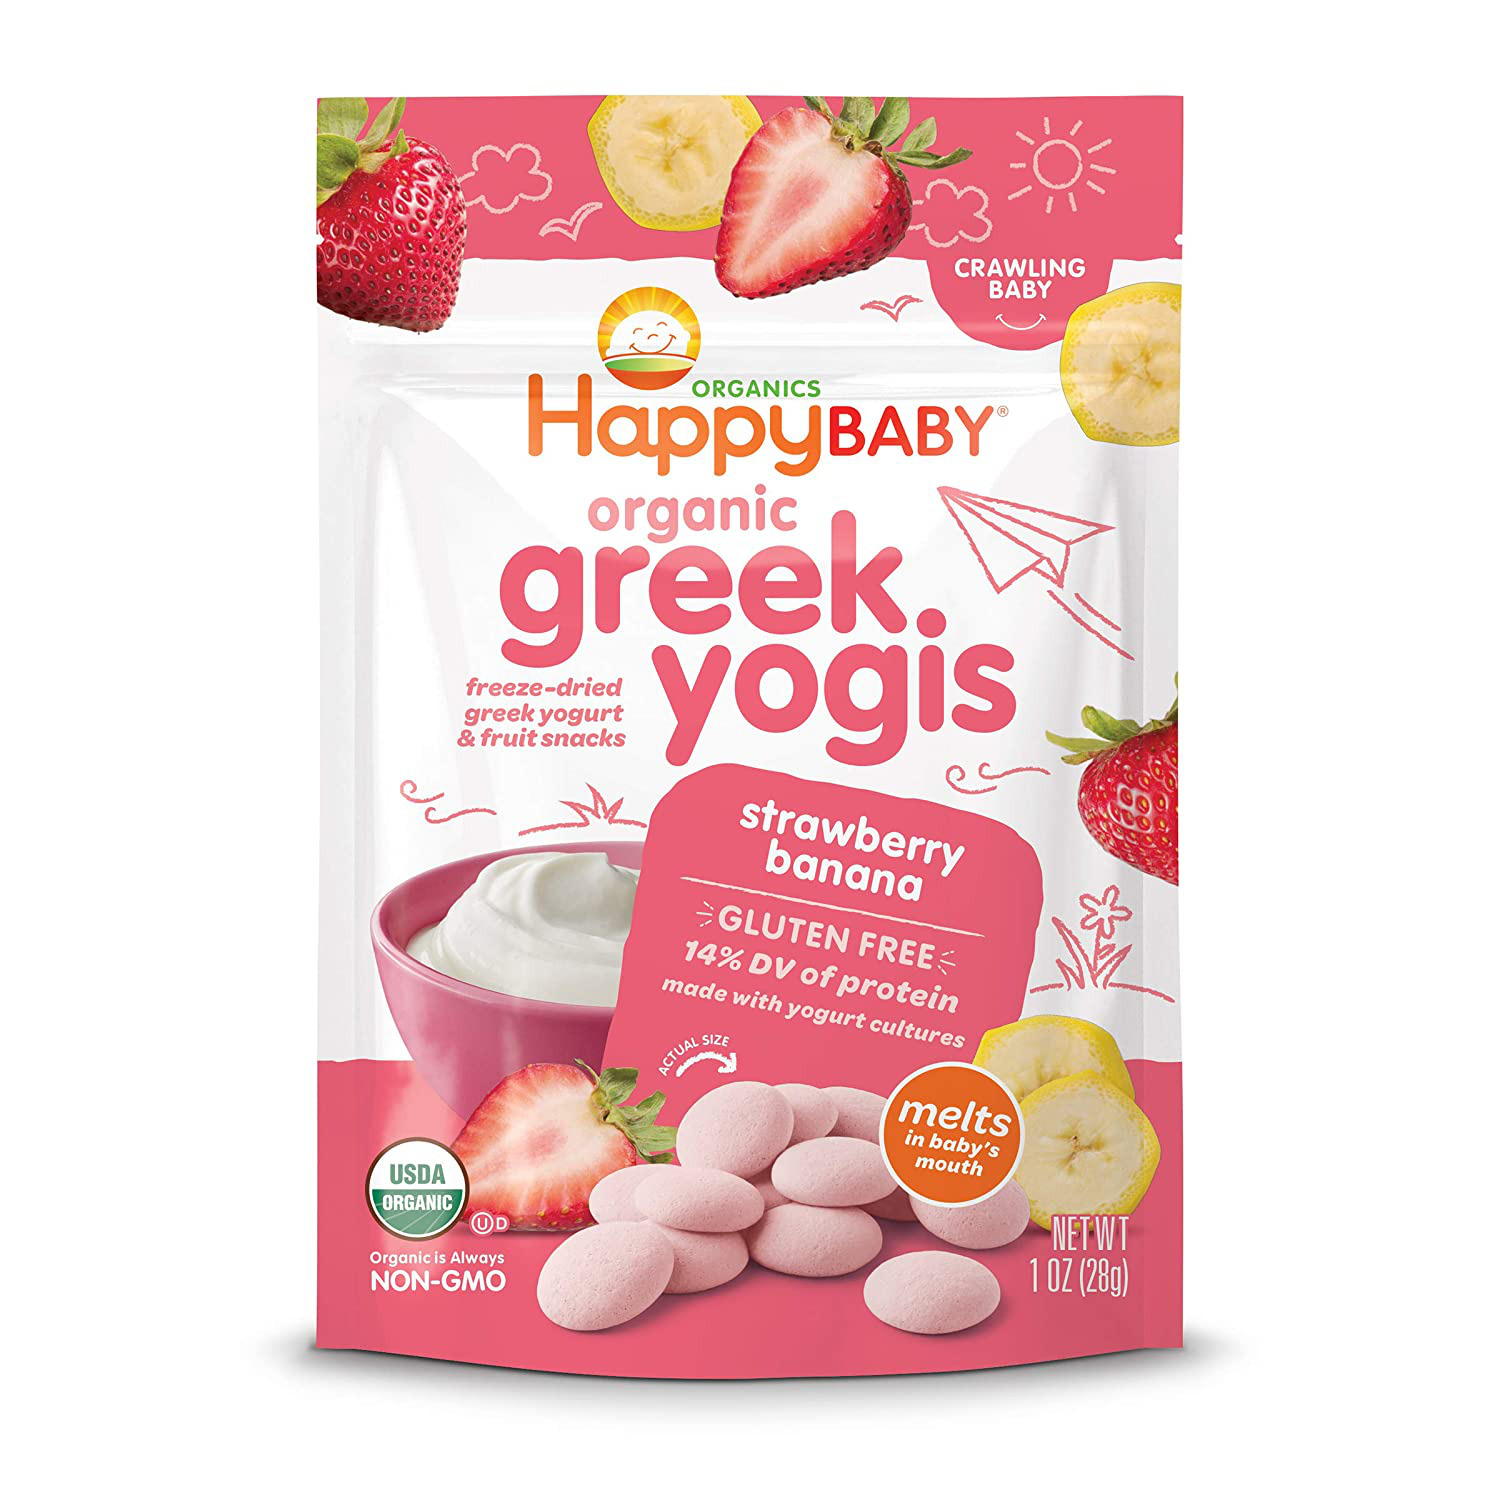 Happy Baby Organics Greek Yogis Freeze-dried Greek Yogurt And Fruit Snacks, Stra